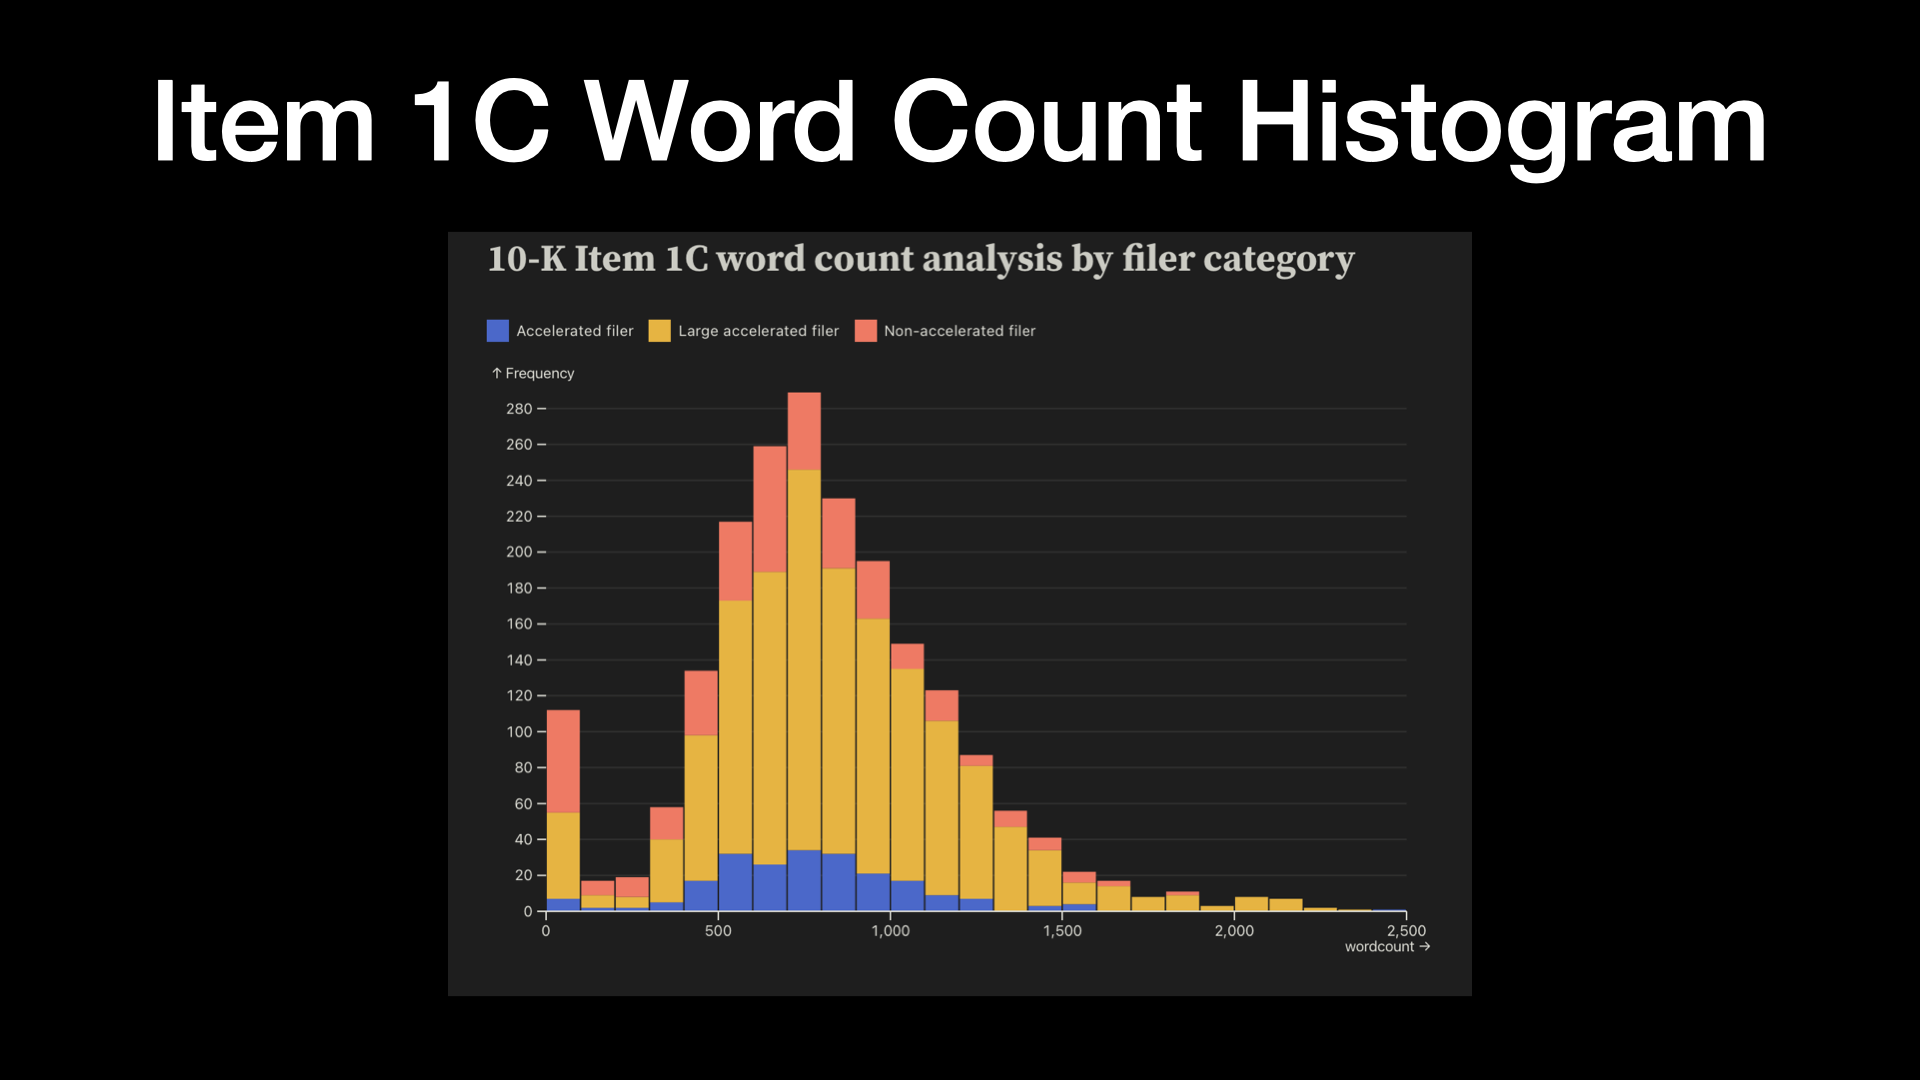 ltem 1C Word Count Histogram